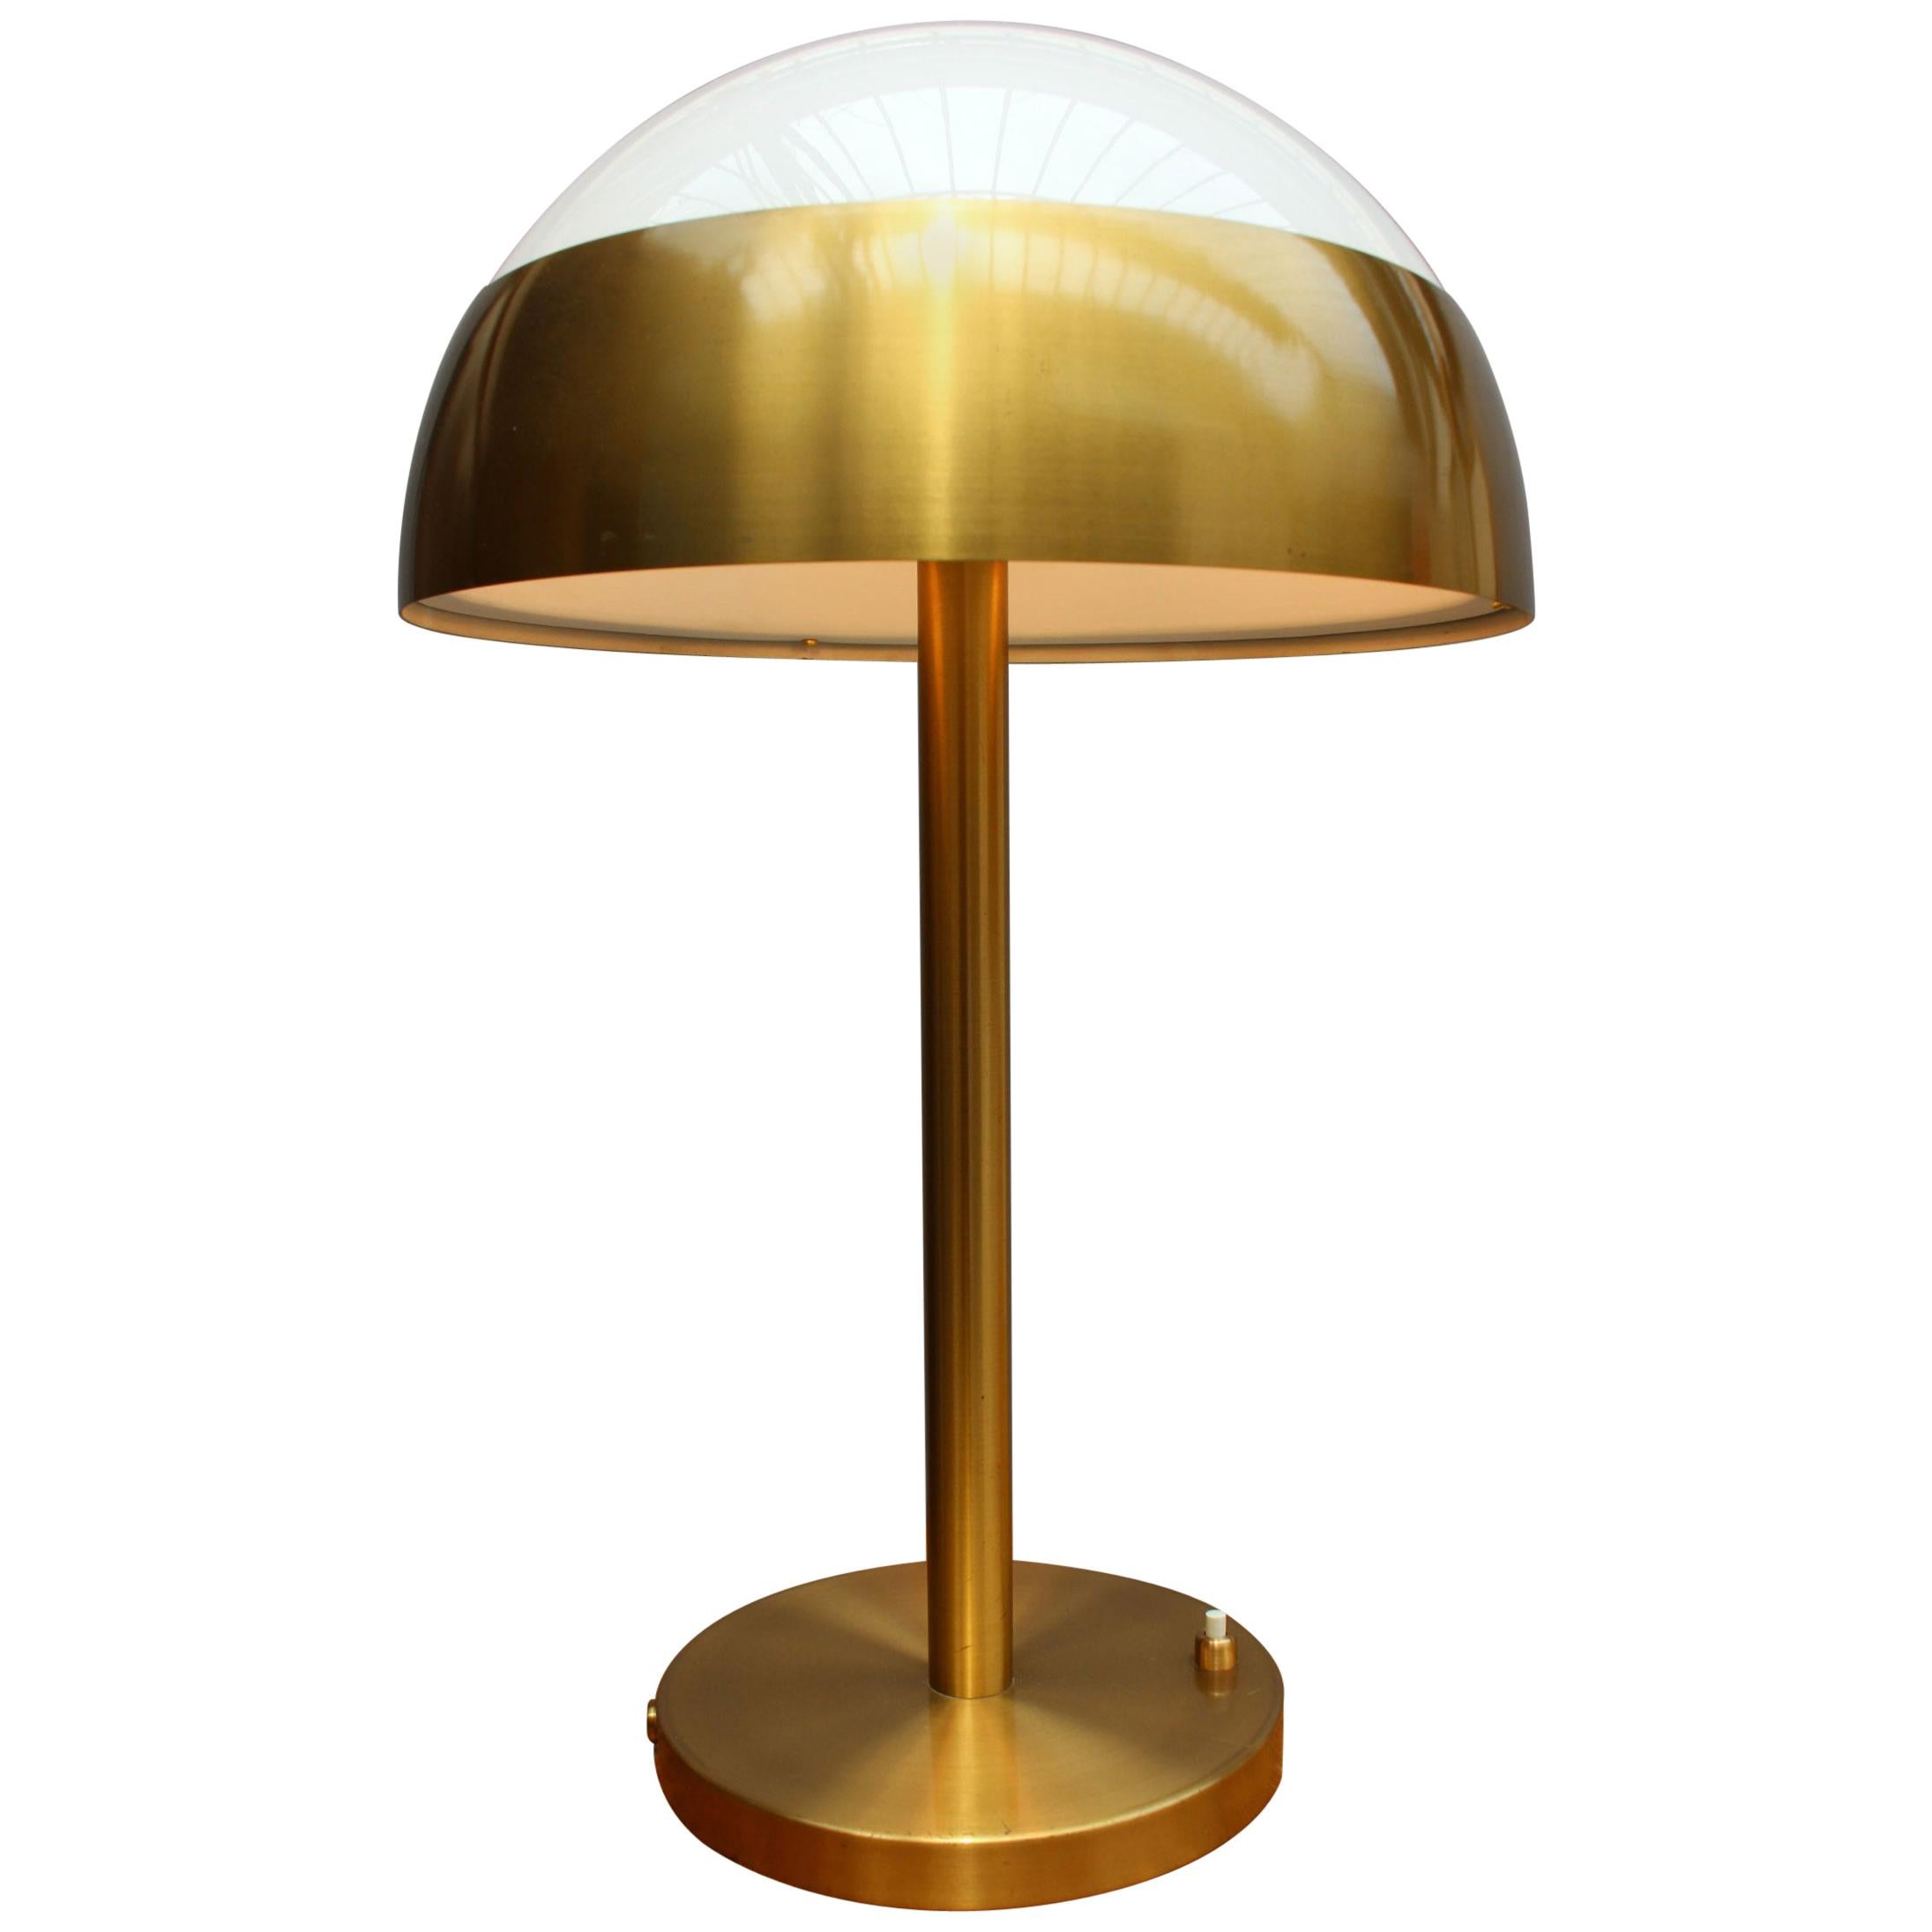 Fine French Art Deco Table Lamp by Jean Perzel